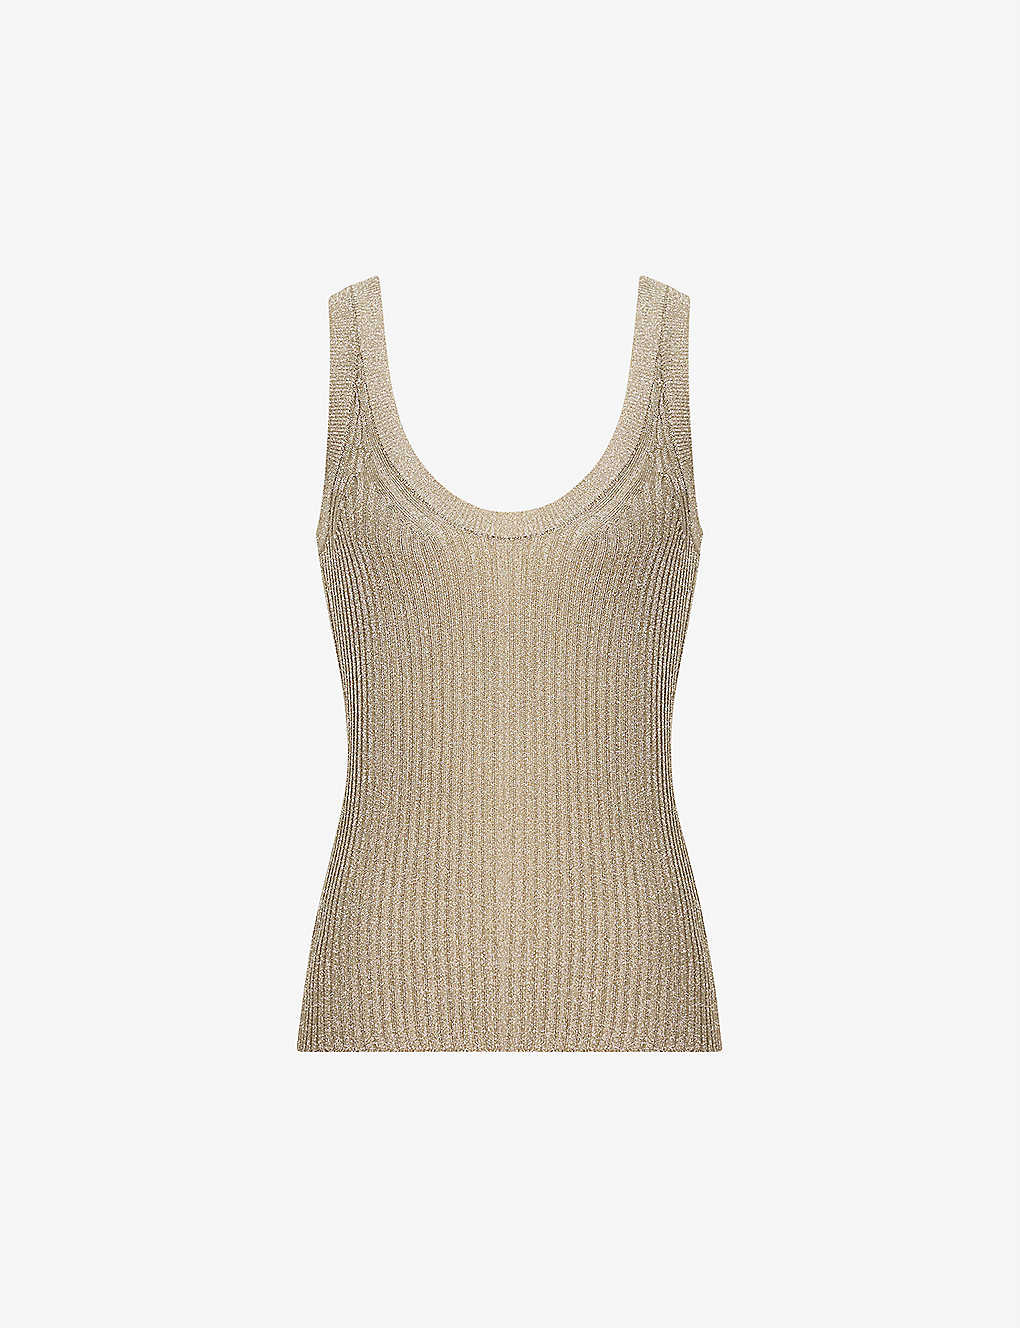 Shop Reiss Women's Gold Imogen Metallic-thread Knitted Top